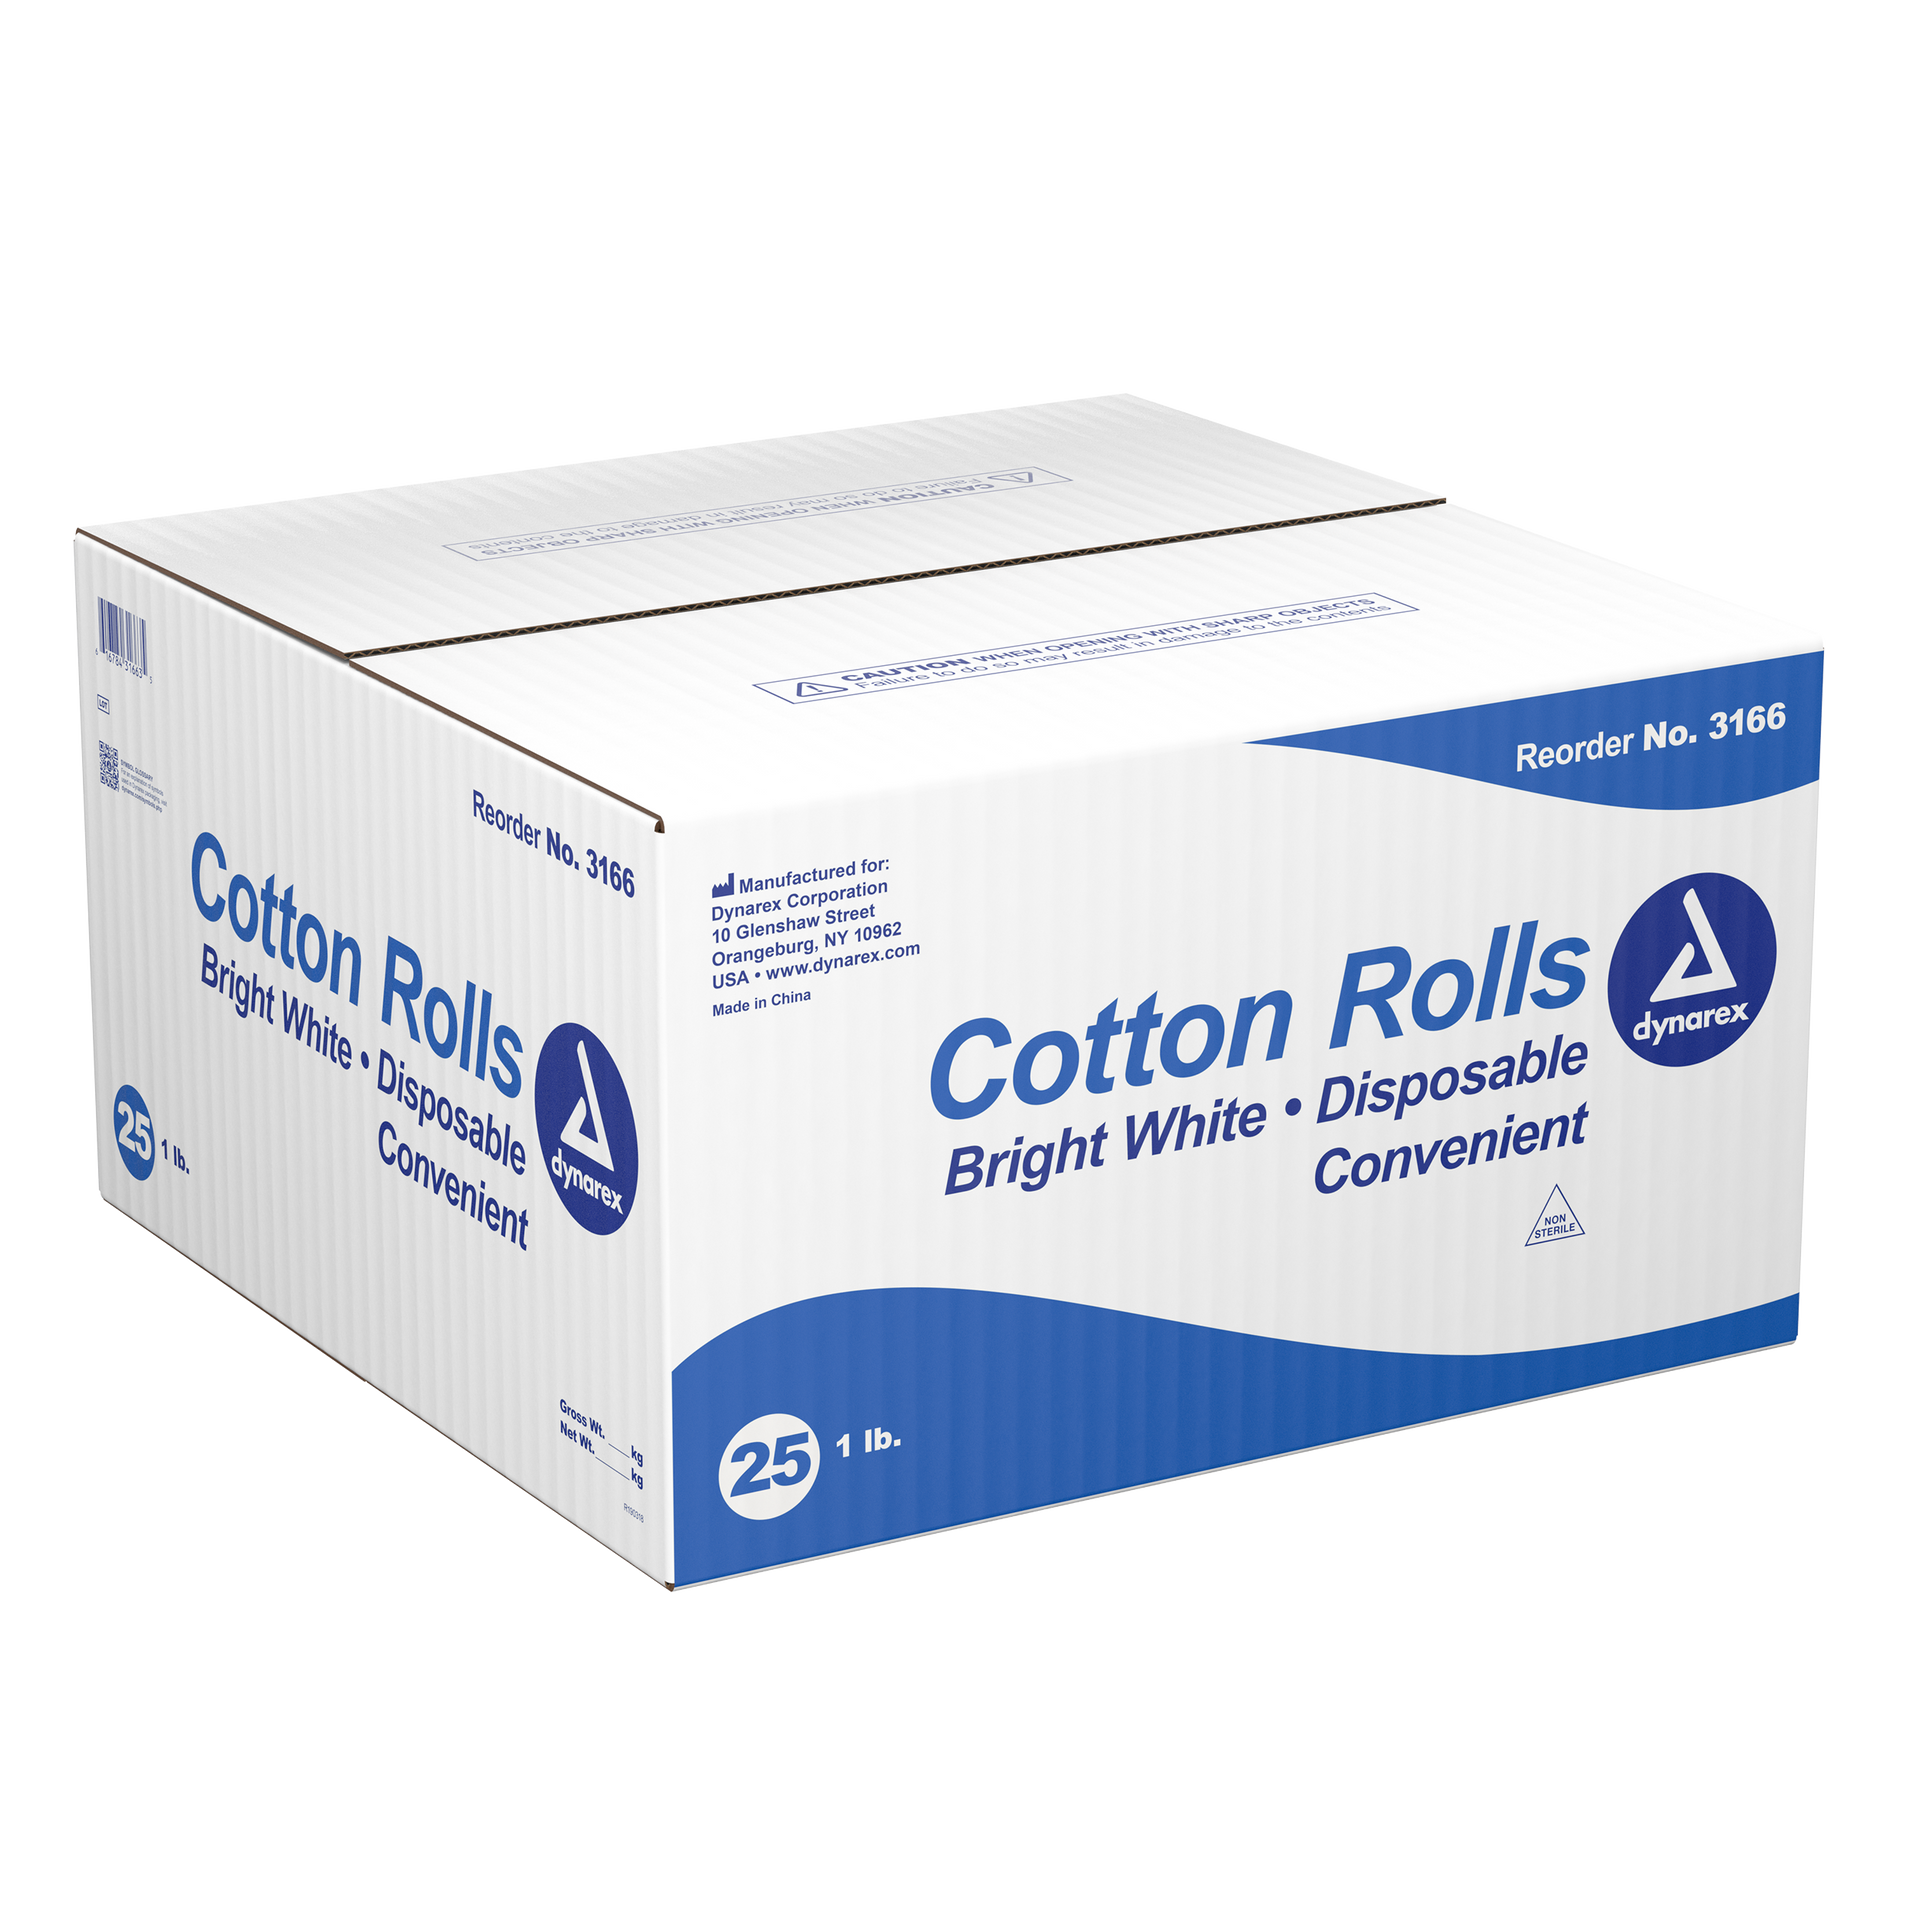 Medline Sterile Cotton Balls, Large, Pack Of 5, Case Of 25 Packs